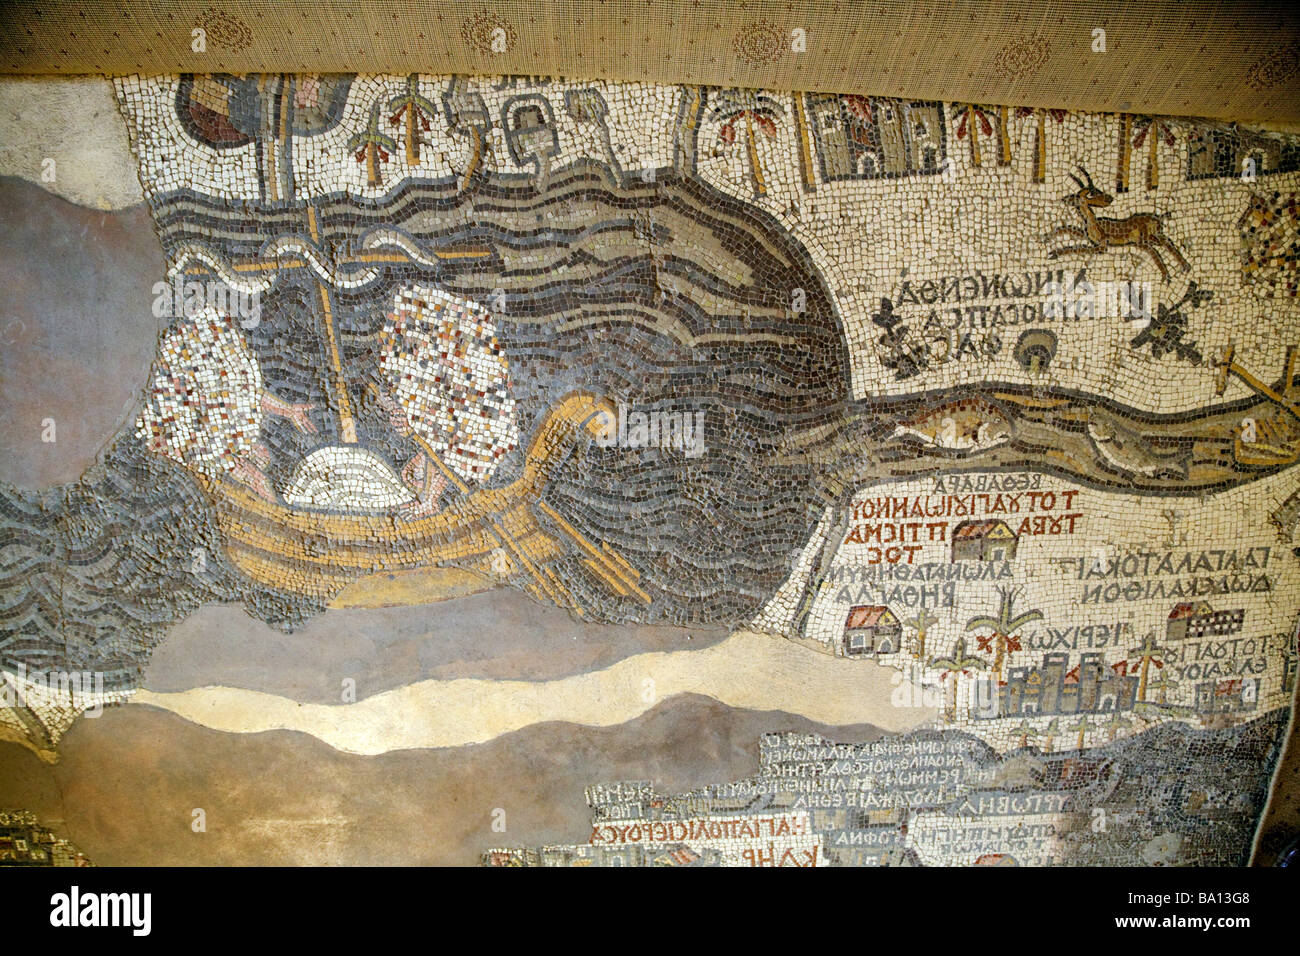 Abschnitt von der Madaba Karte des Heiligen Landes, dem Toten Meer und dem Jordan; Kirche St. Georg, Madaba, Jordanien, Naher Osten Stockfoto